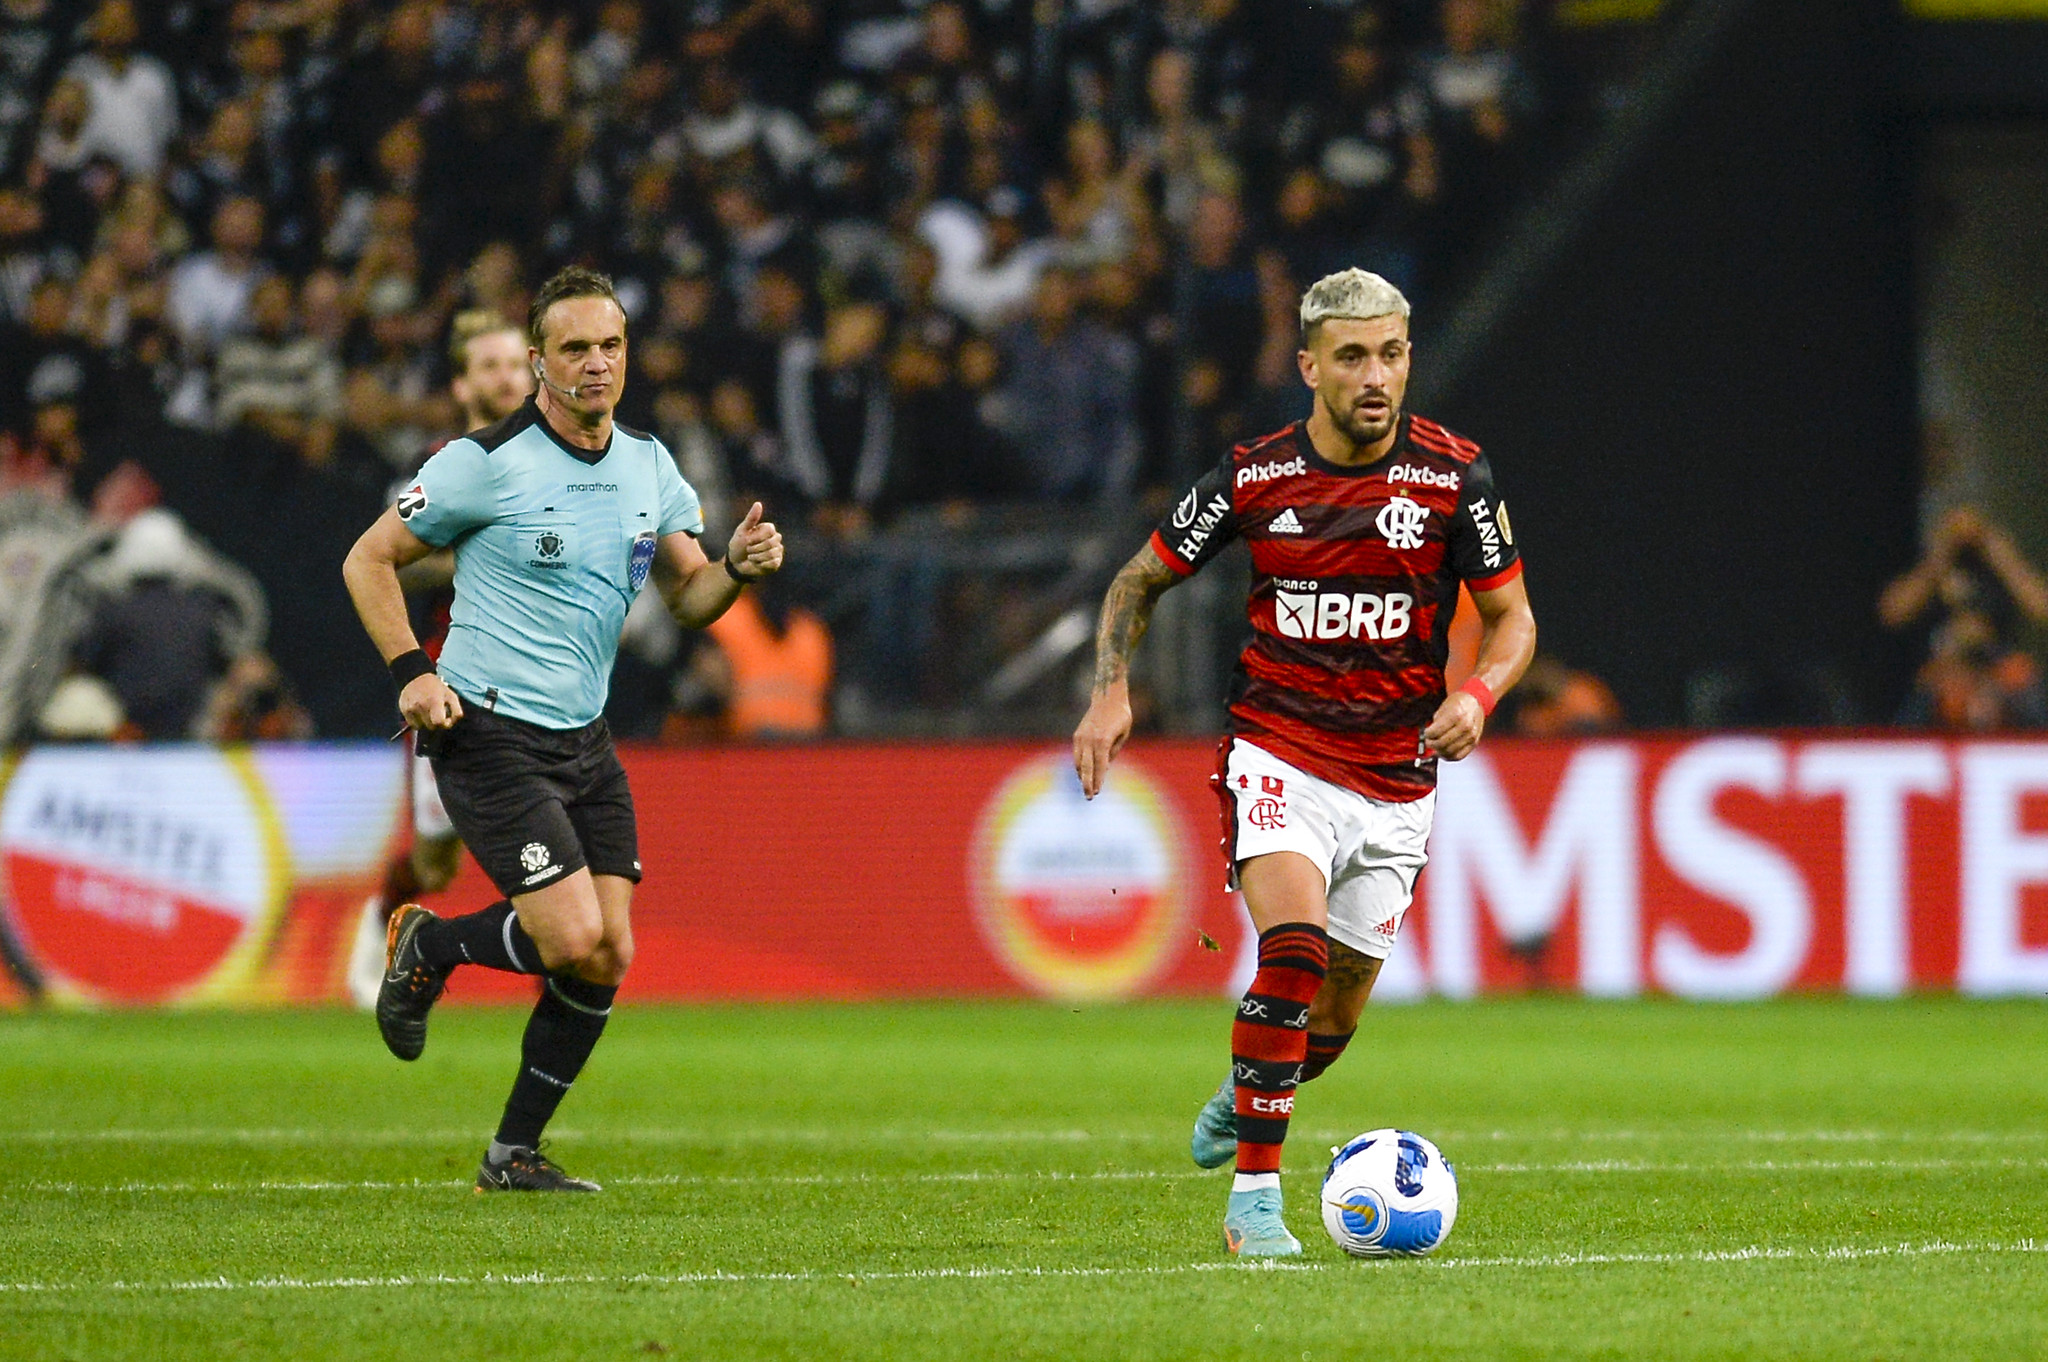 Arrascaeta comemora triunfo do Flamengo e projeta volta contra o Corinthians: ‘Vai ser muito difícil’